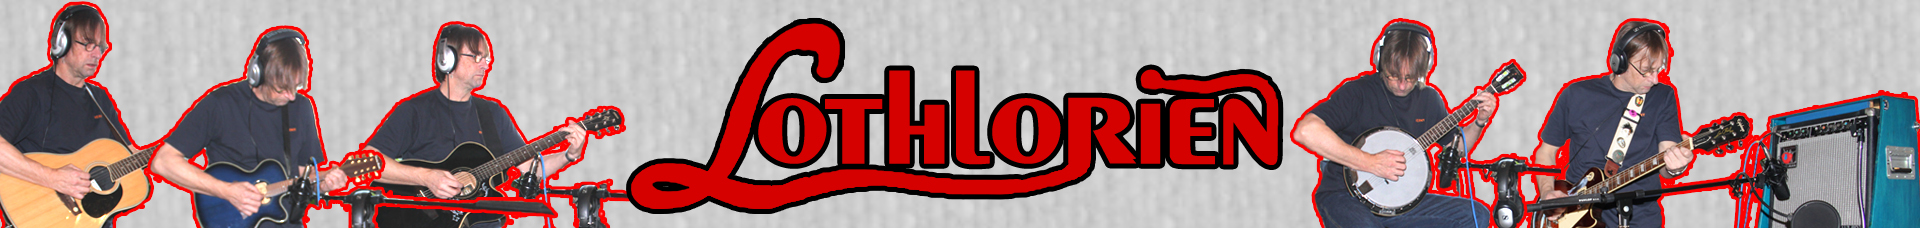 Lothlorien Banner